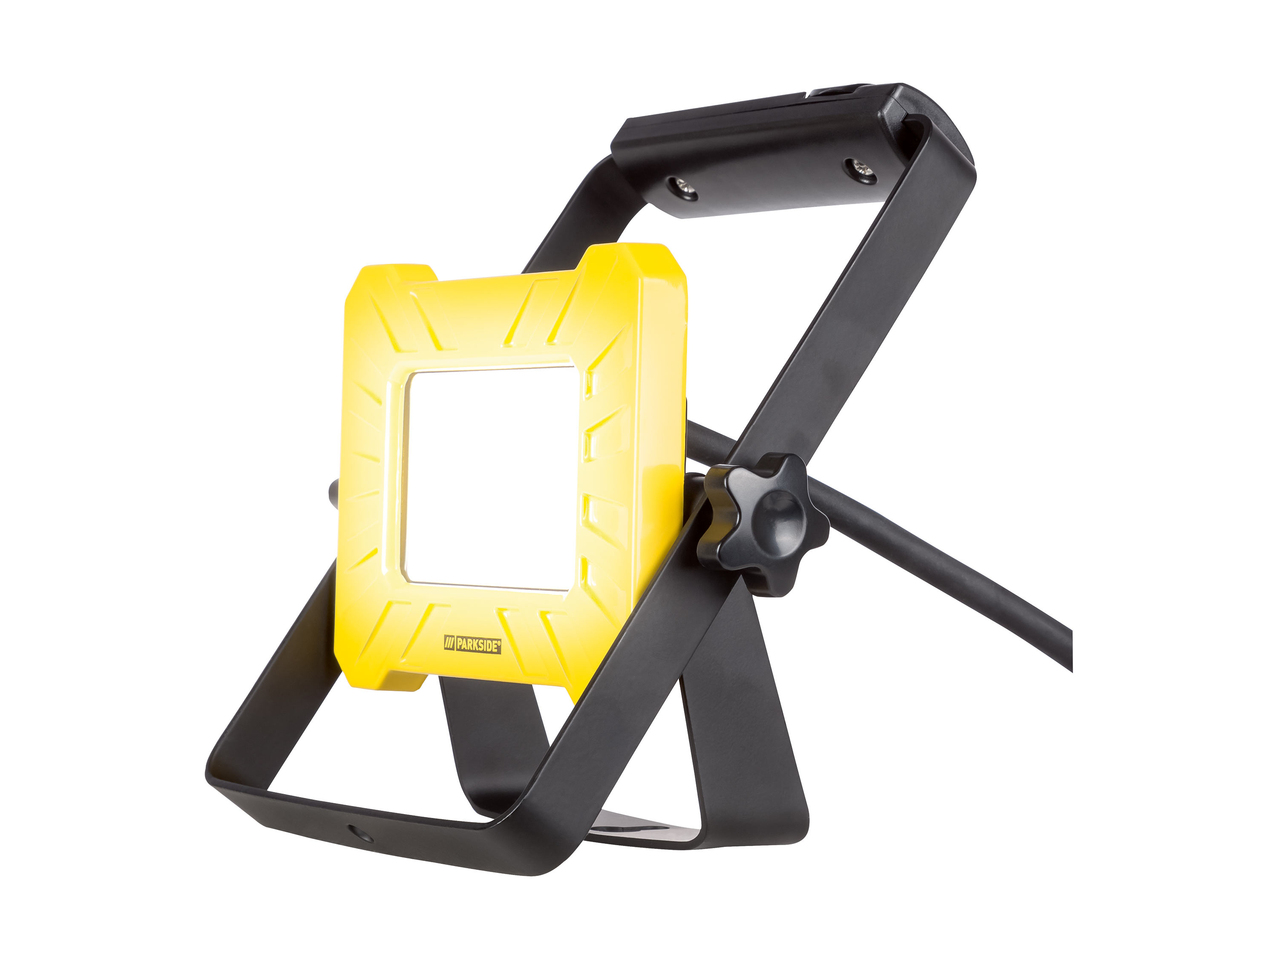 PARKSIDE® Reflektor roboczy LED 10 W , cena 59,9 PLN 
 
- aluminiowa obudowa ...